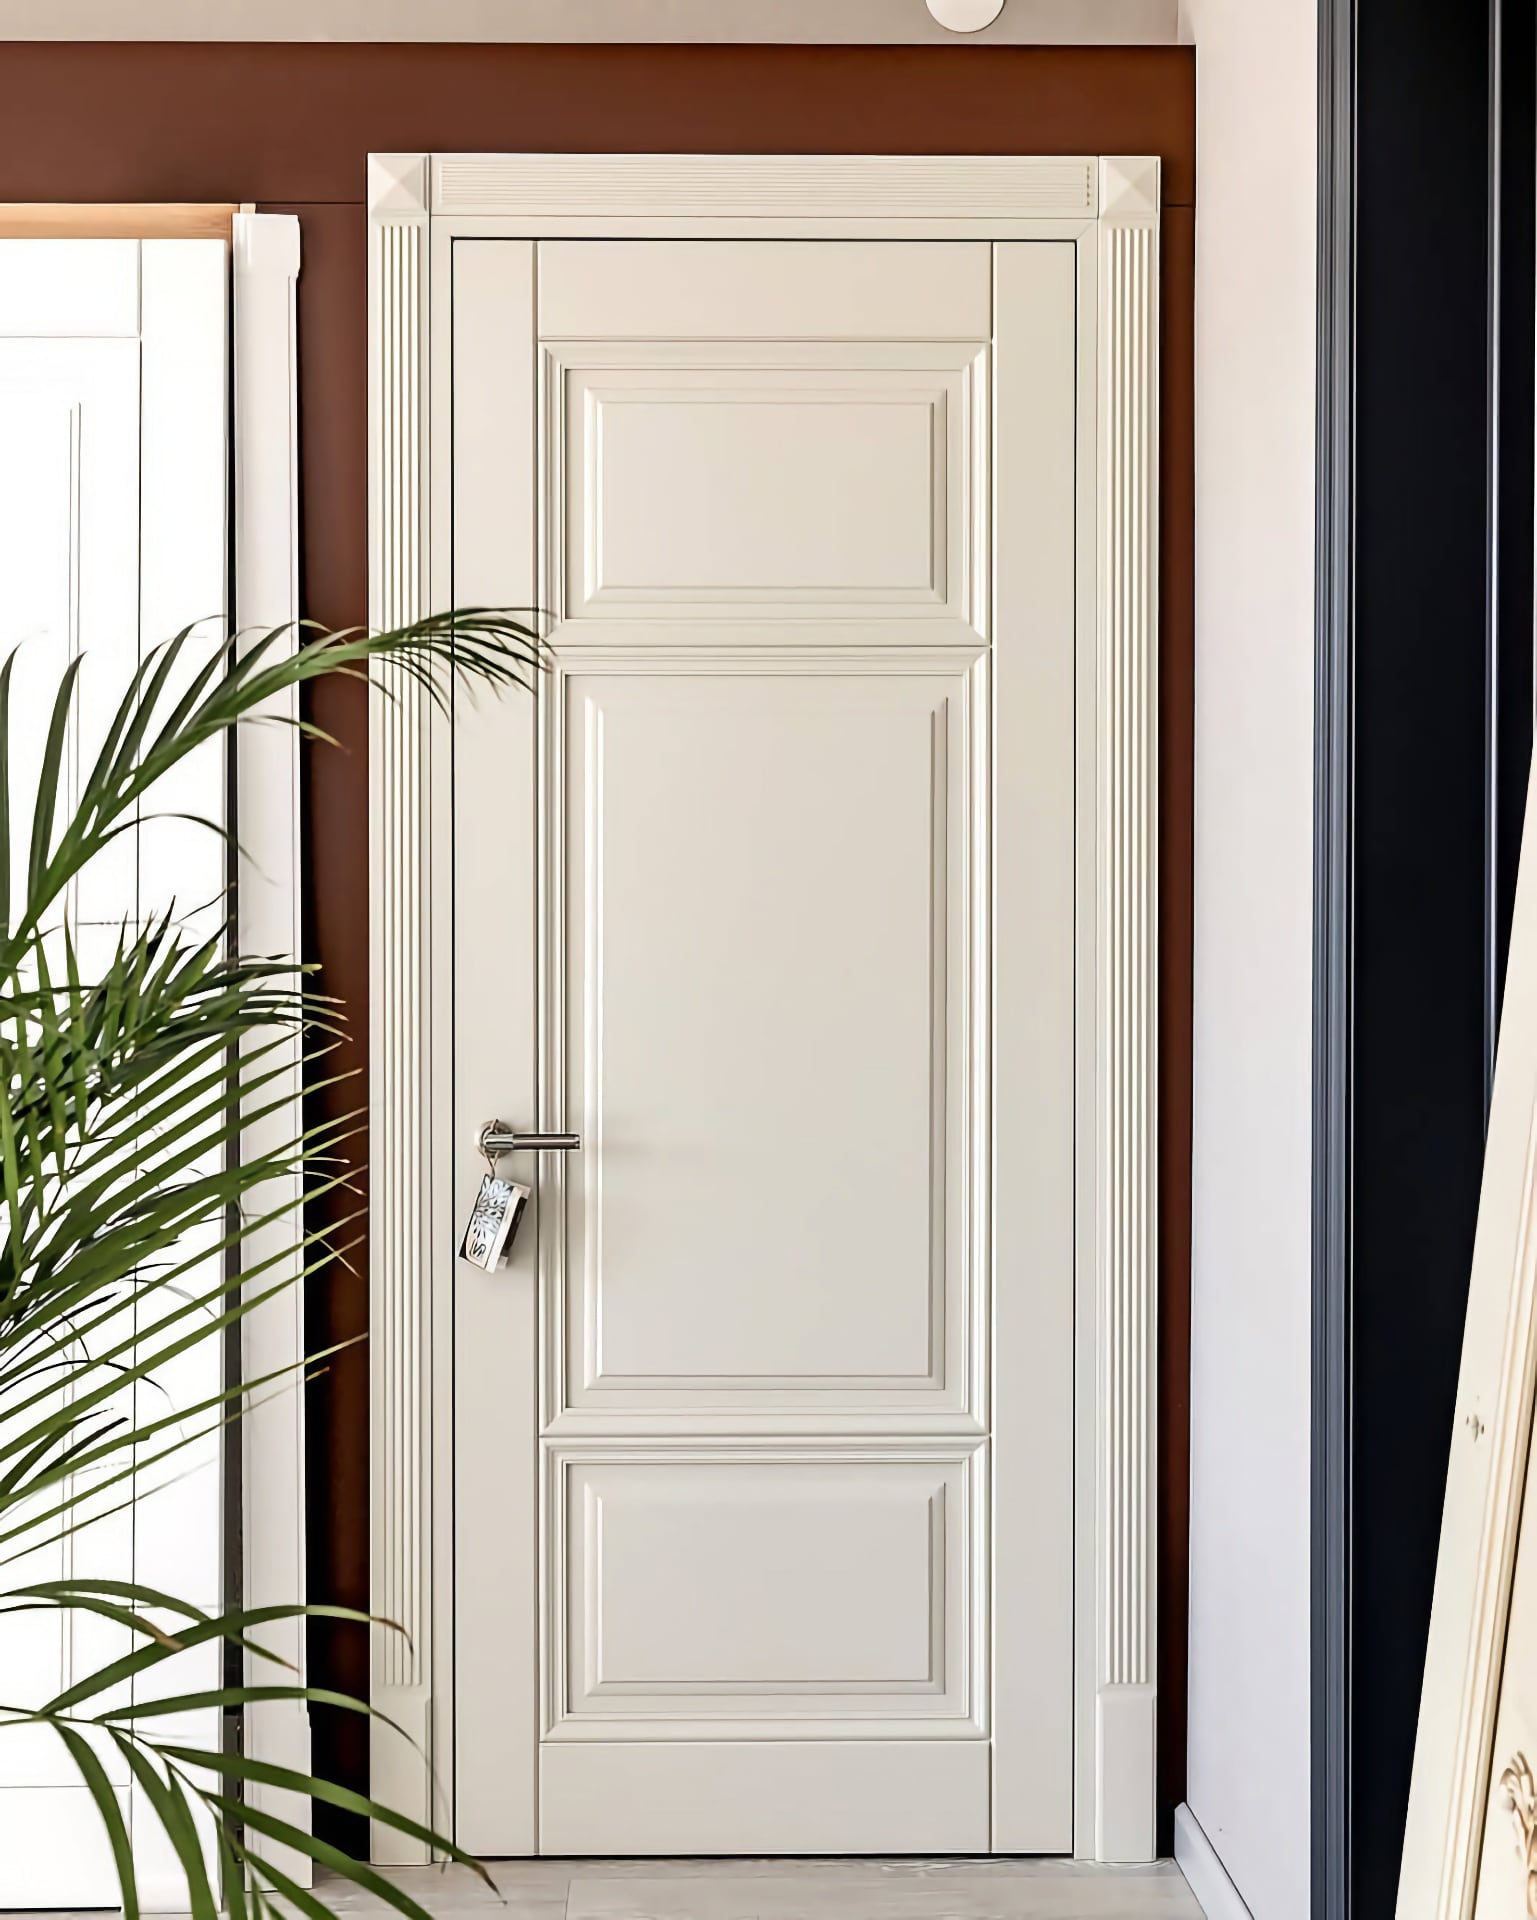 Каталог міжкімнатних дверей - білі двері на виставці в нашому магазині